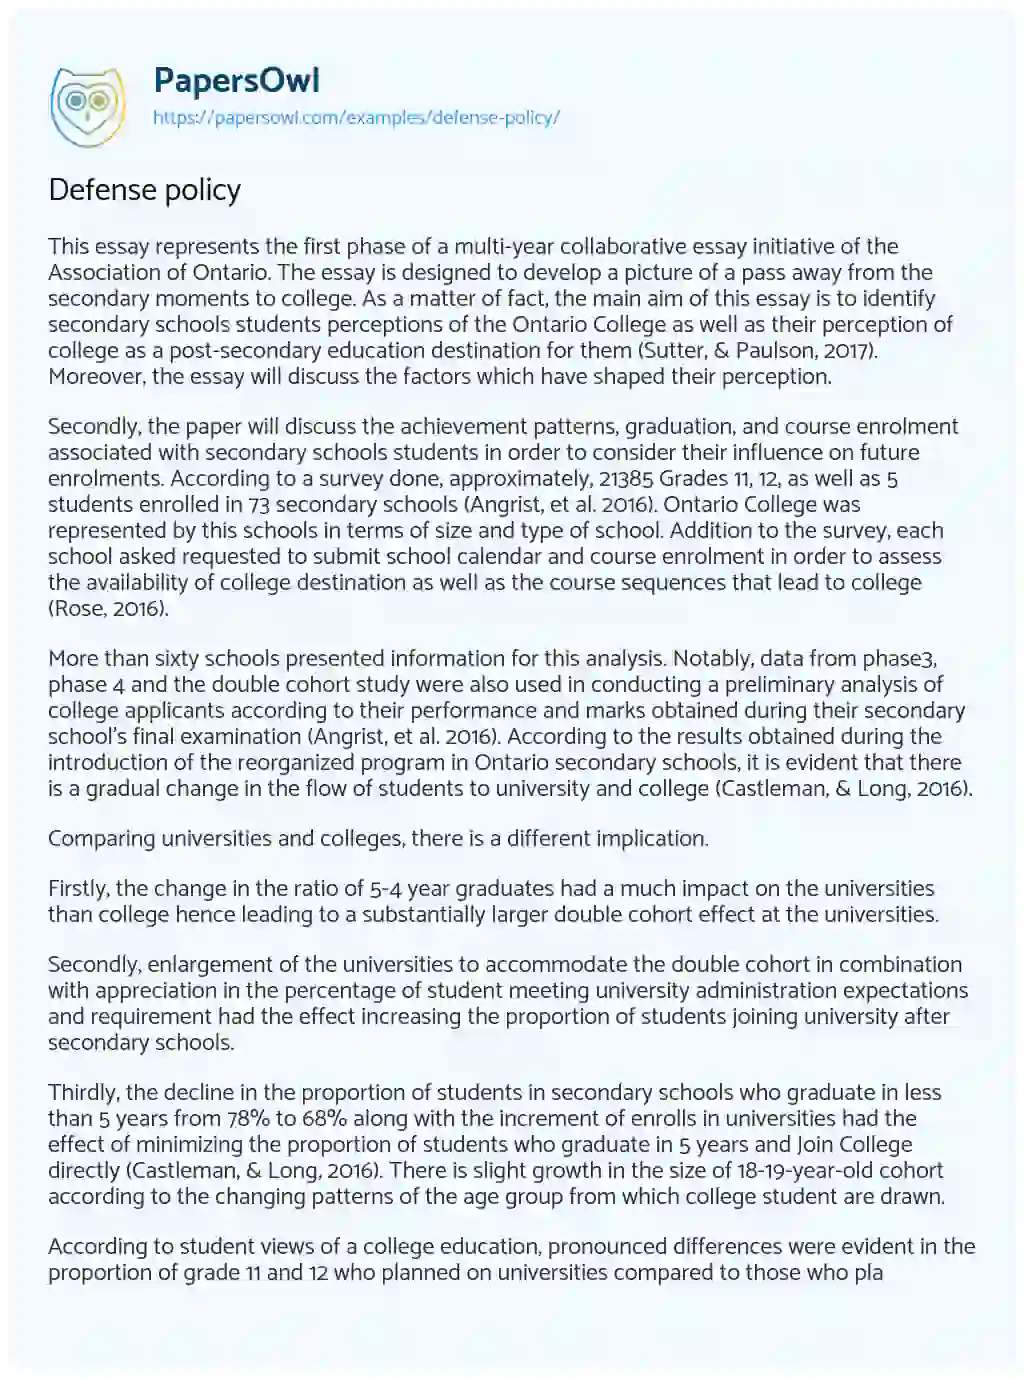 Defense Policy essay